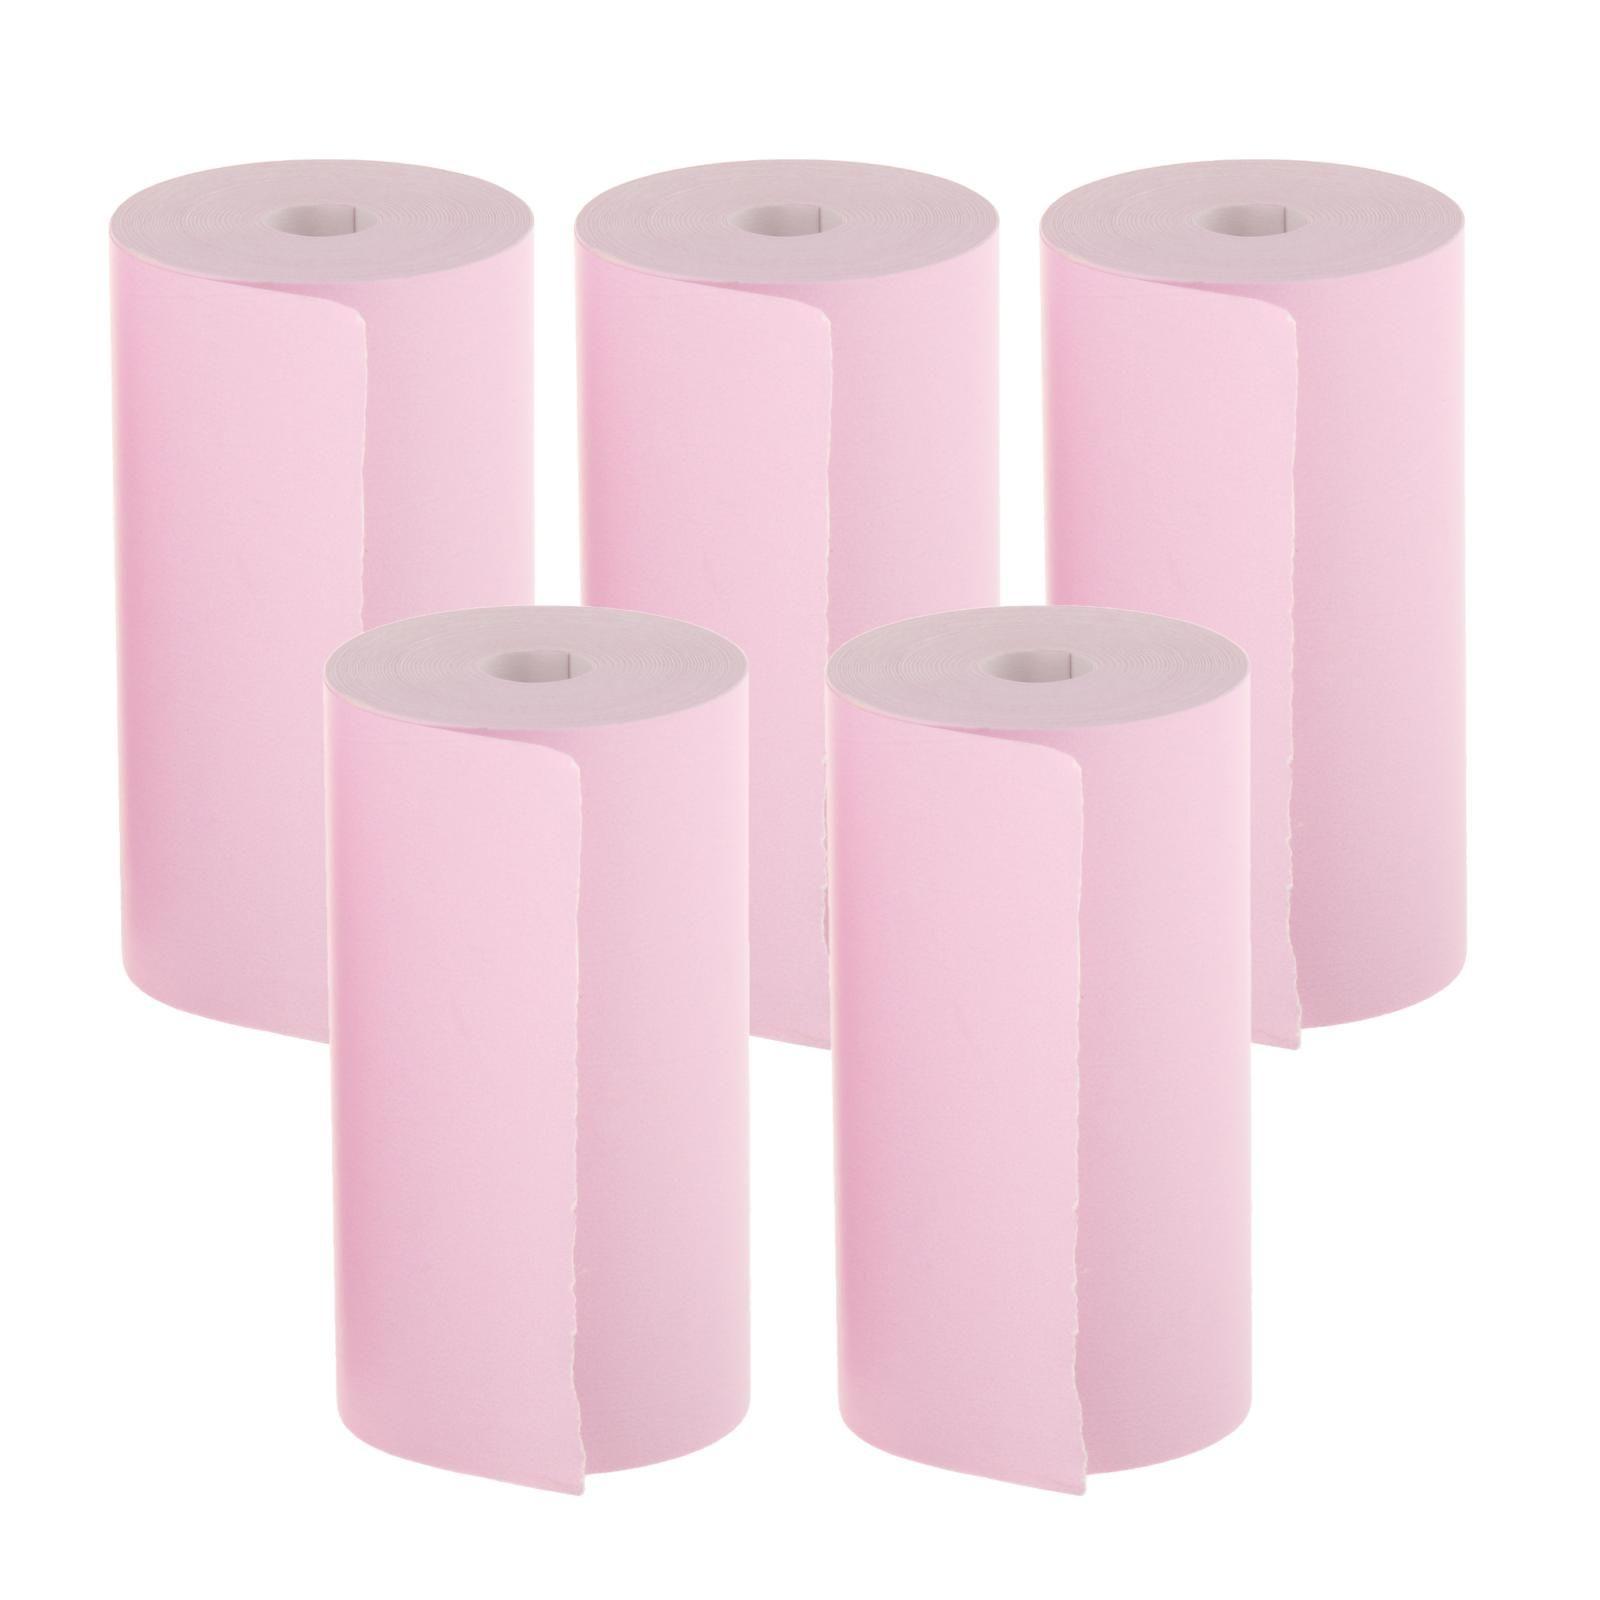 Mini imprimante portable papier d'impression thermique coloré rose